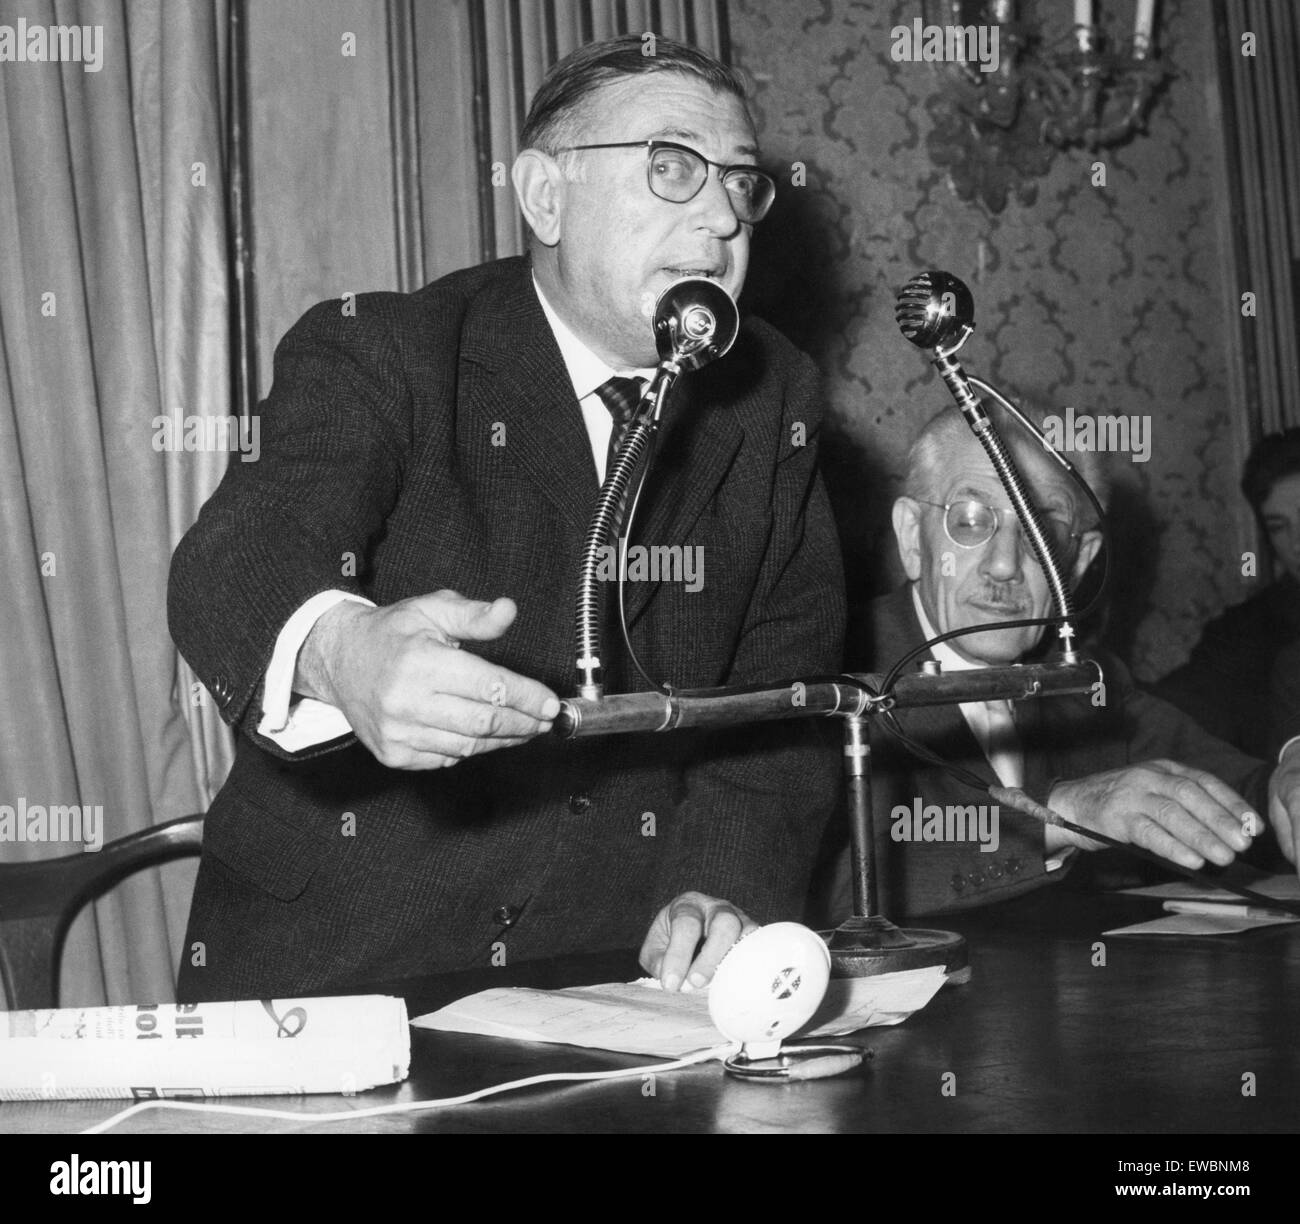 Conferencia sobre el problema argelino, Jean Paul Sartre, a la derecha, el senador parri, 1970-80 Foto de stock